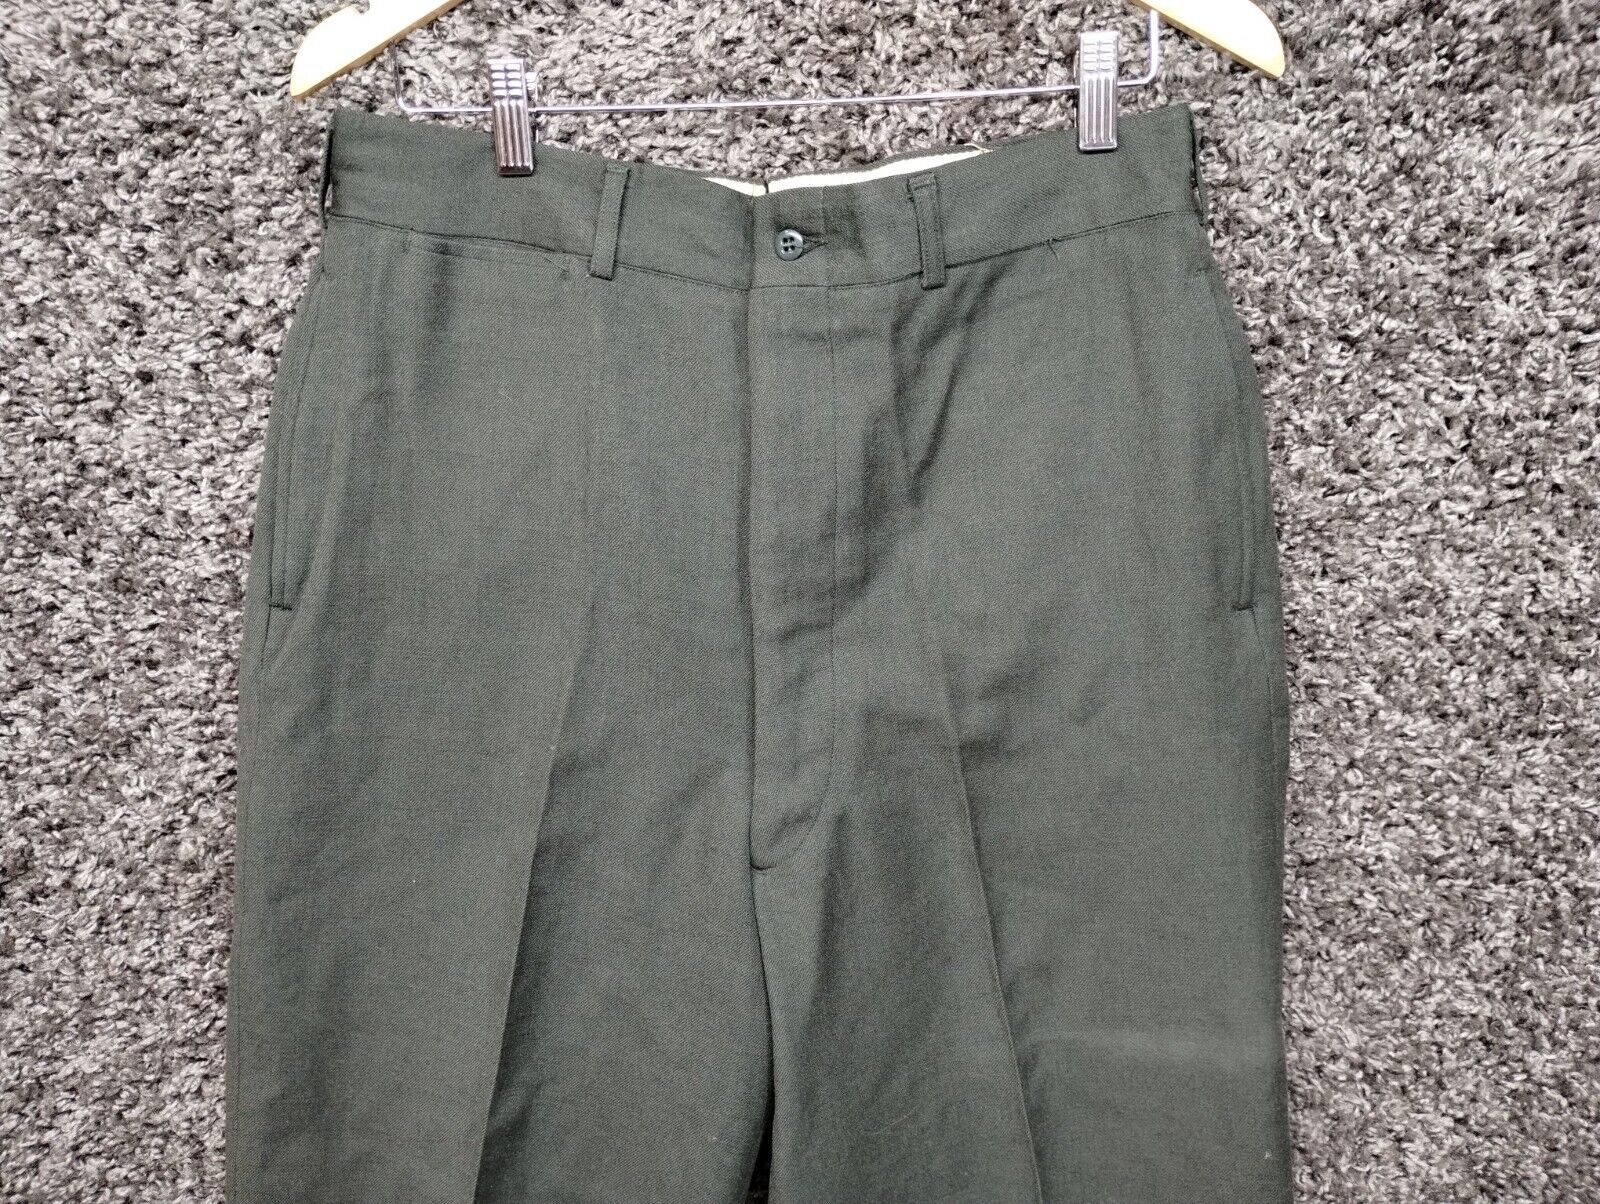 Vintage Trousers 1960s Vietnam Wool Serge Green Standard Long 34x36